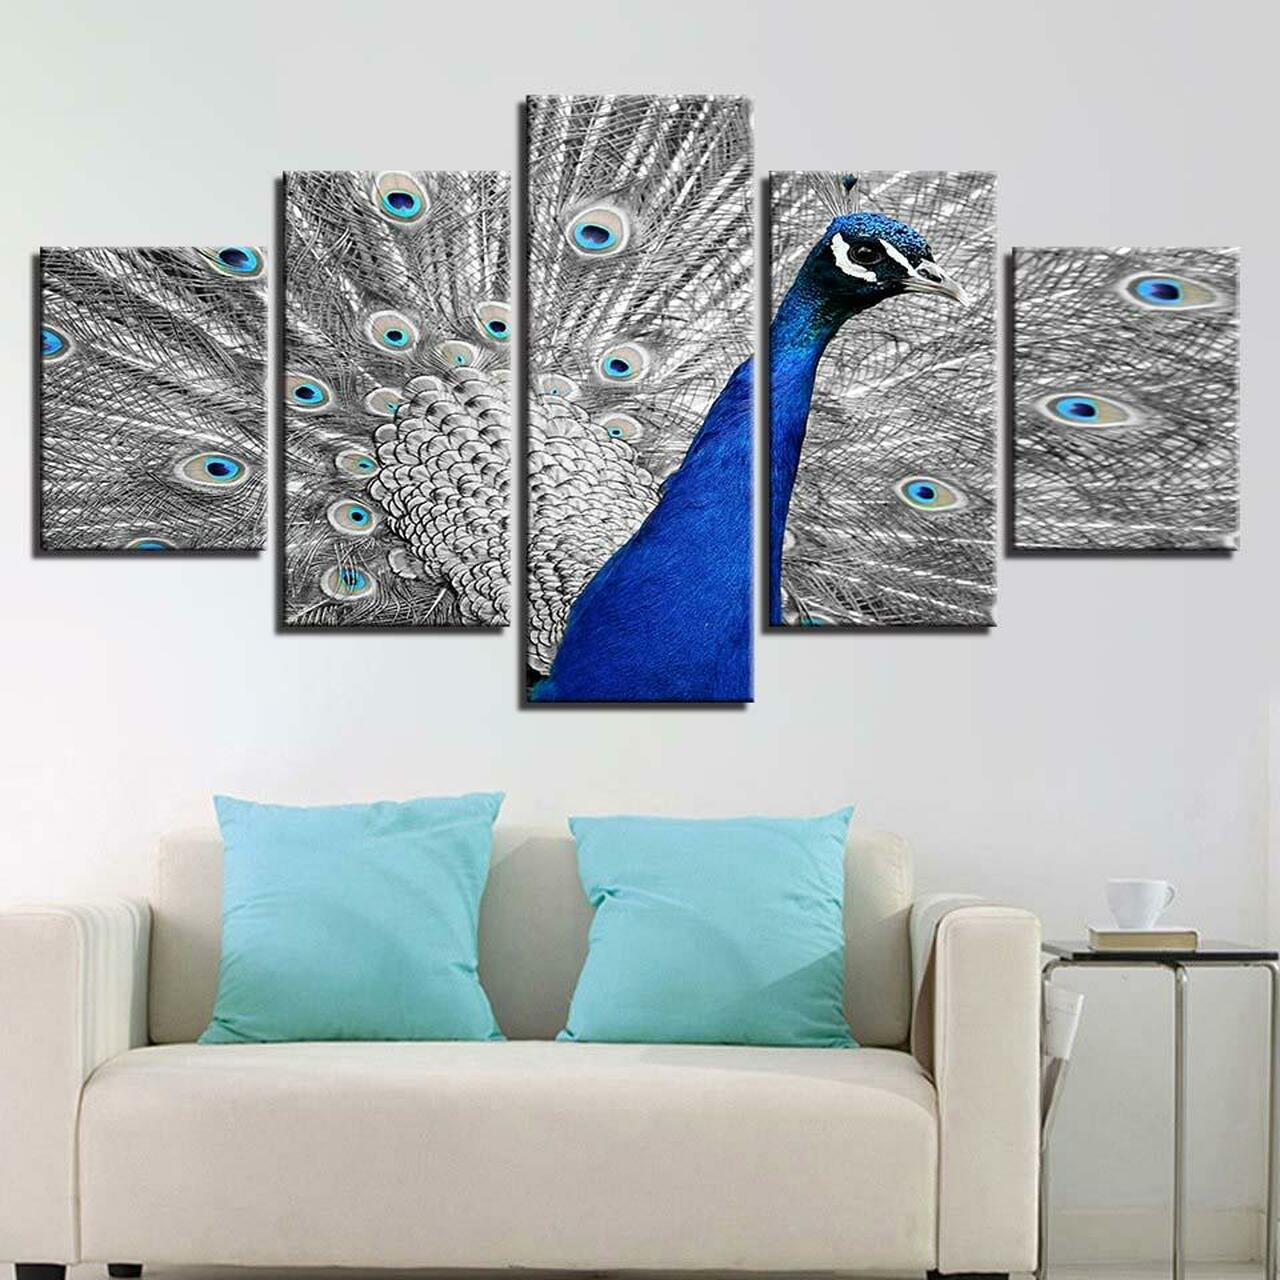 peacock and its colors 5 pices peinture sur toile impression sur toile toile art pour la dcoration intrieurezjgut